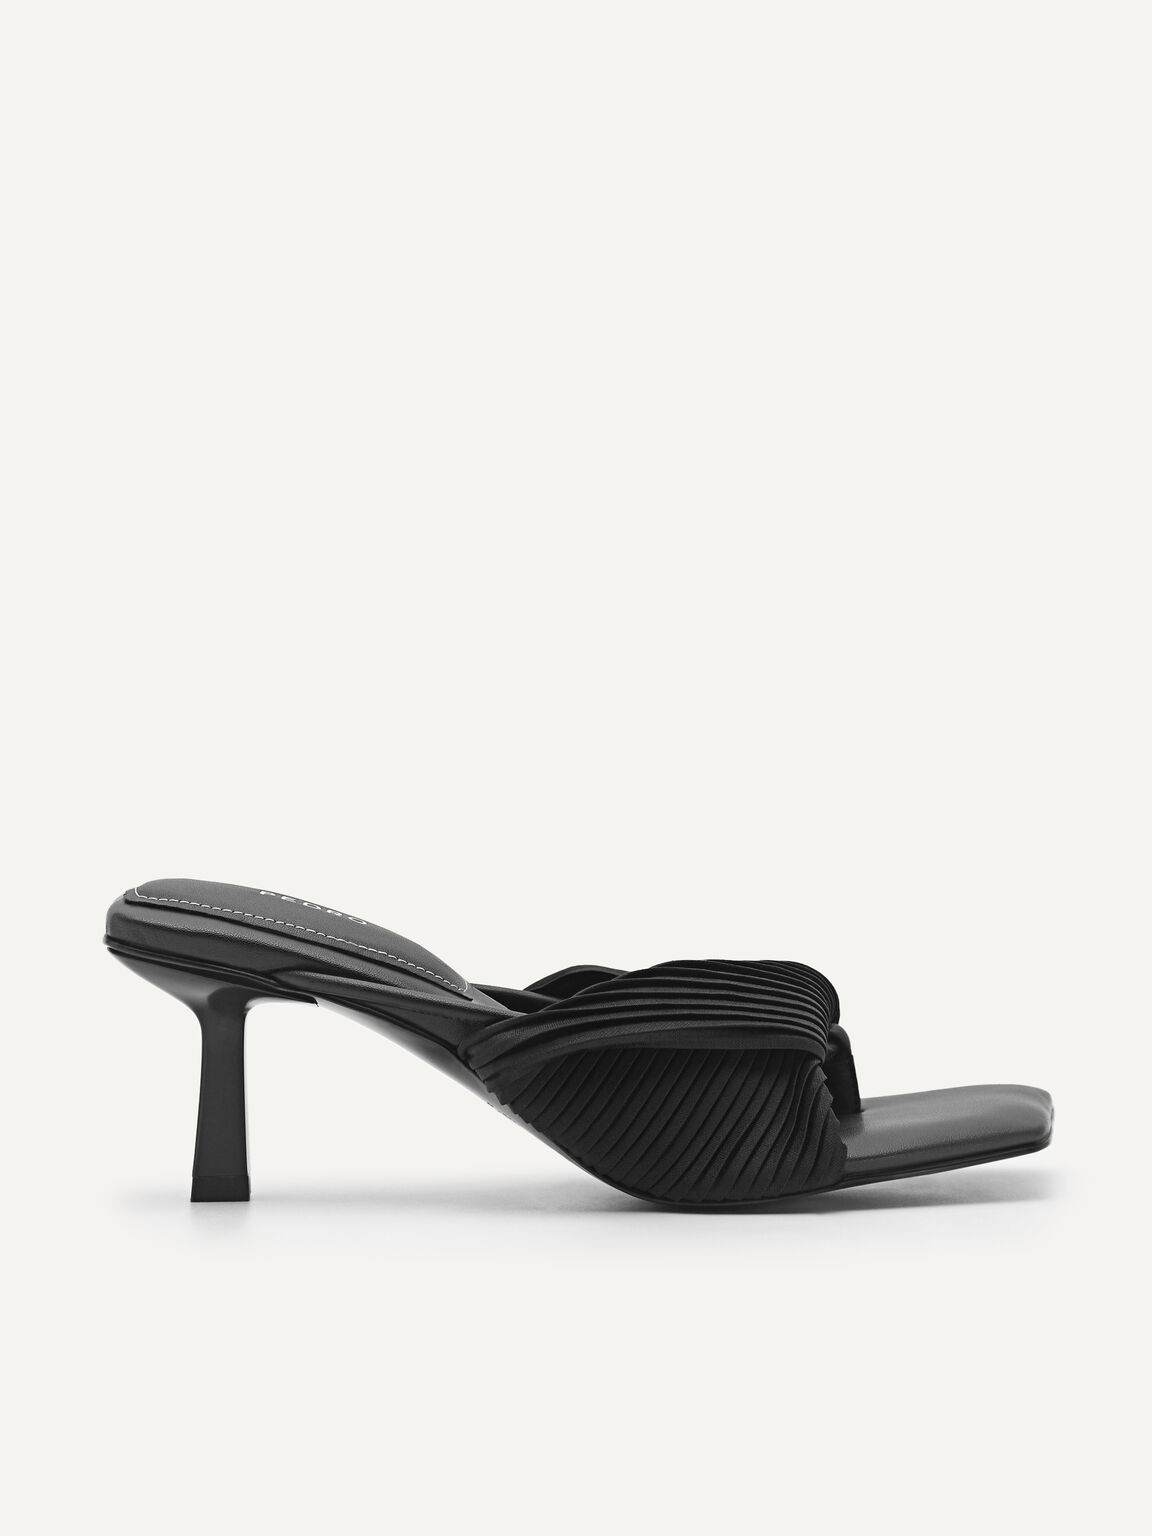 rePEDRO Pleated Heeled Sandals, Black